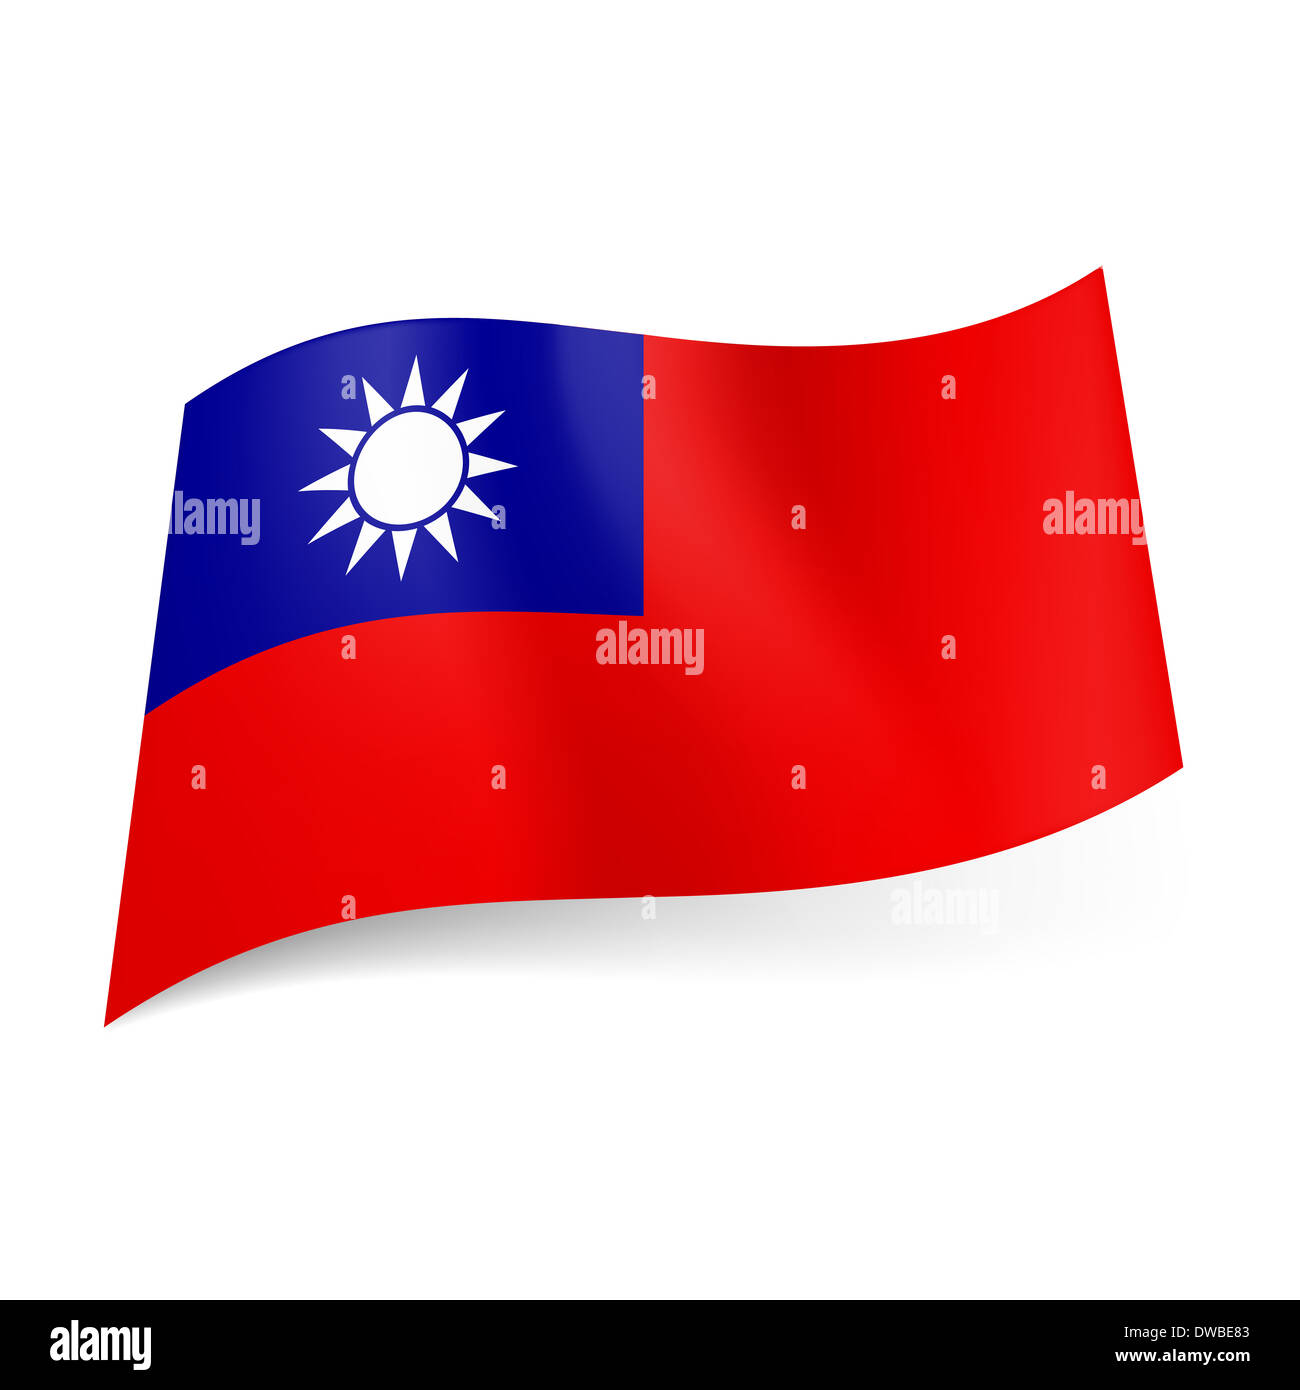 Nationalflagge von Taiwan, der Volksrepublik China: blaues Quadrat mit  weißen Sonne in der oberen linken Ecke des roten Feld Stockfotografie -  Alamy